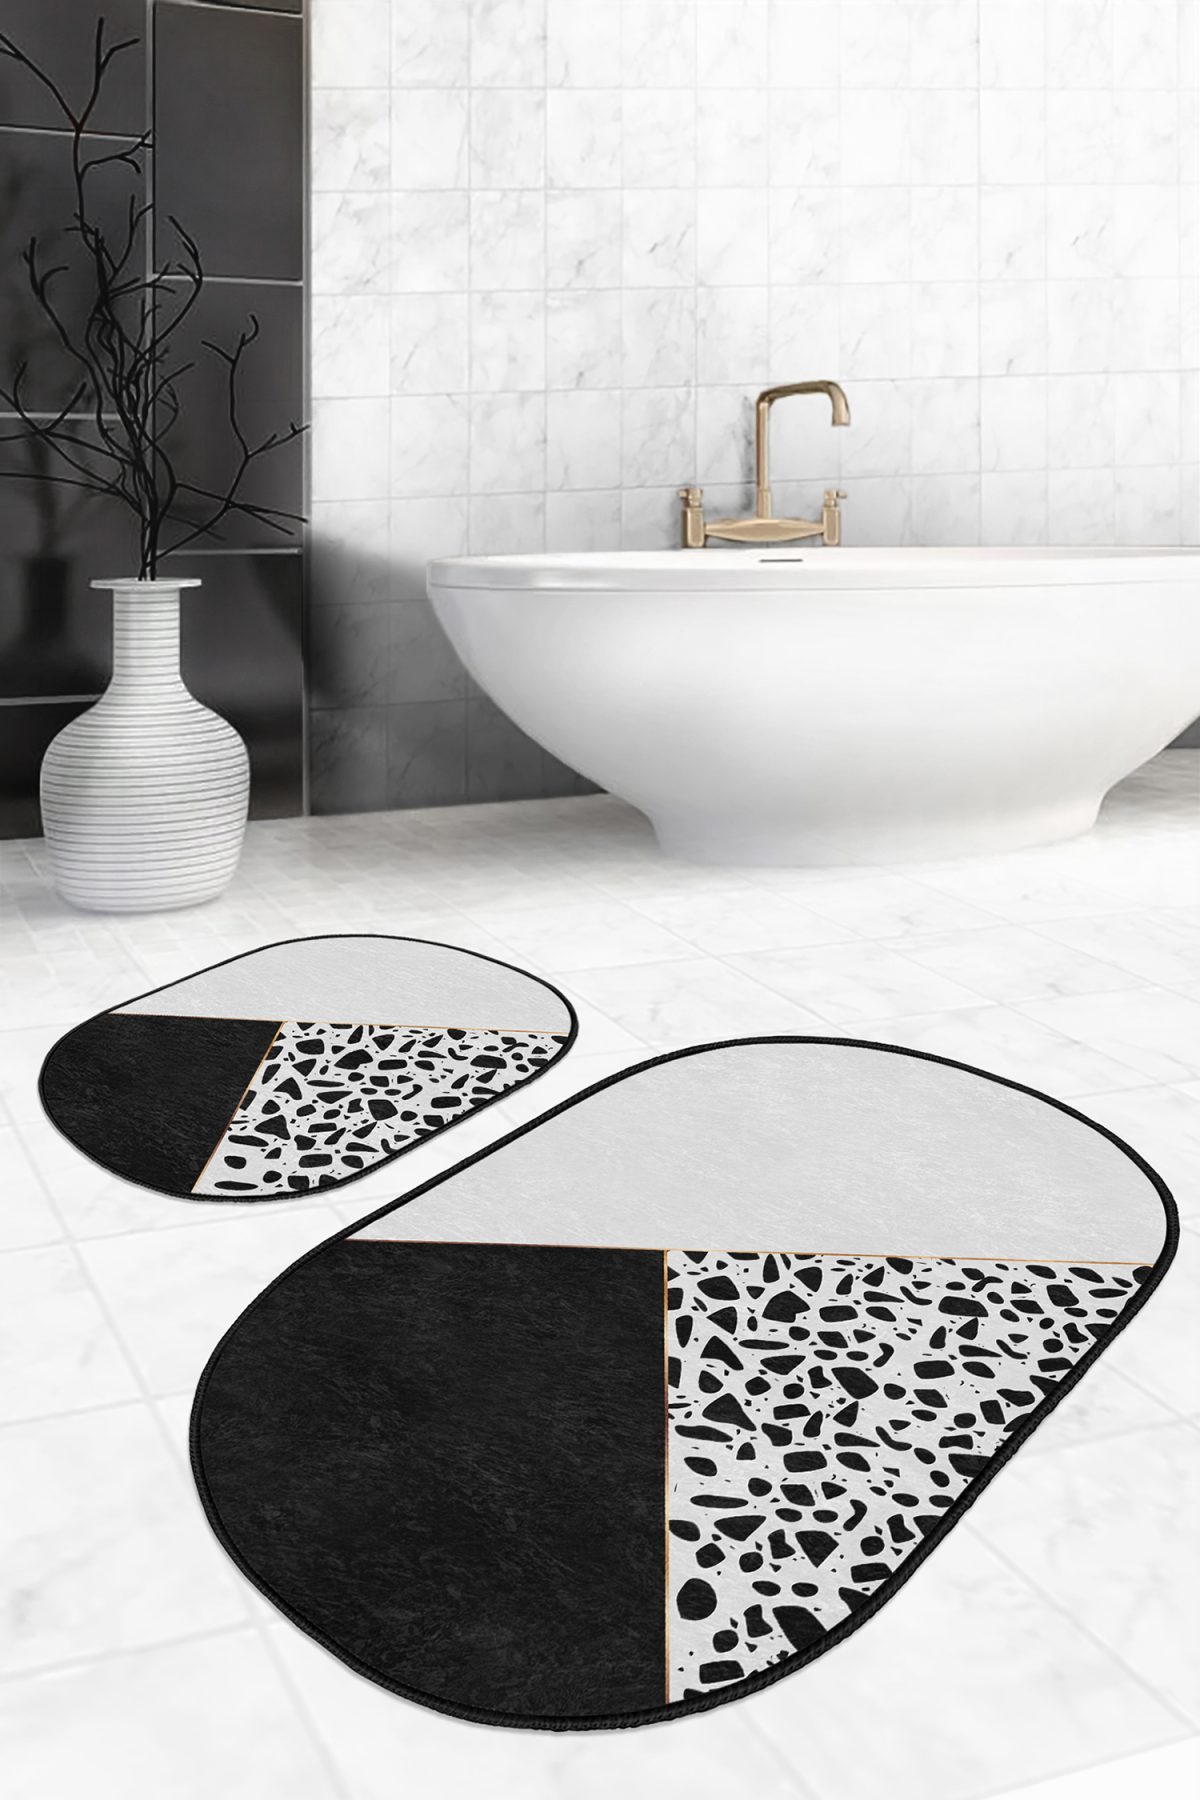 Siyah Beyaz Düz Renkli Taş Tasarımlı 2'li Oval Kaymaz Tabanlı Banyo & Mutfak Paspas Takımı Realhomes